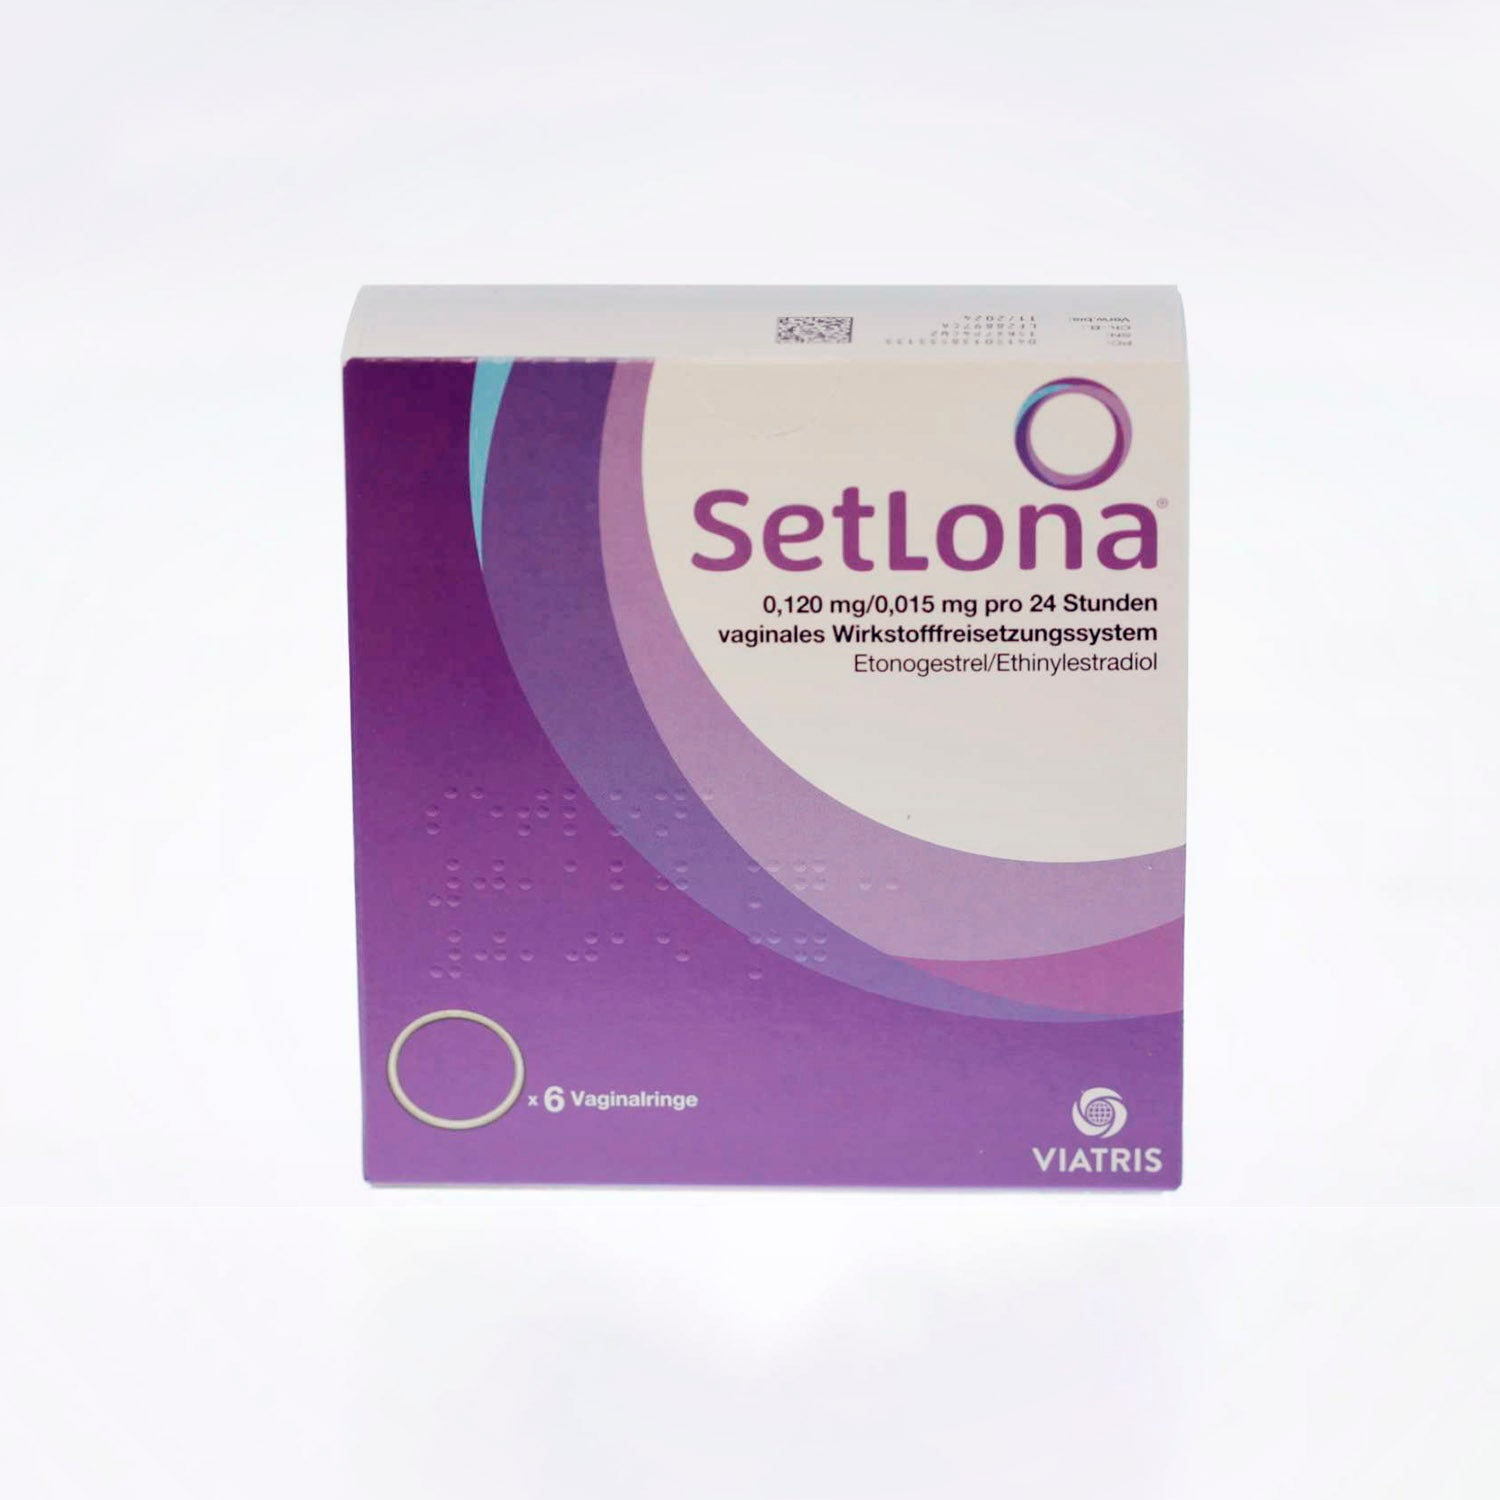 SetLona 0.120 mg/0.015 mg pro 24 Stunden vaginales Wirkstofffreisetzungssystem